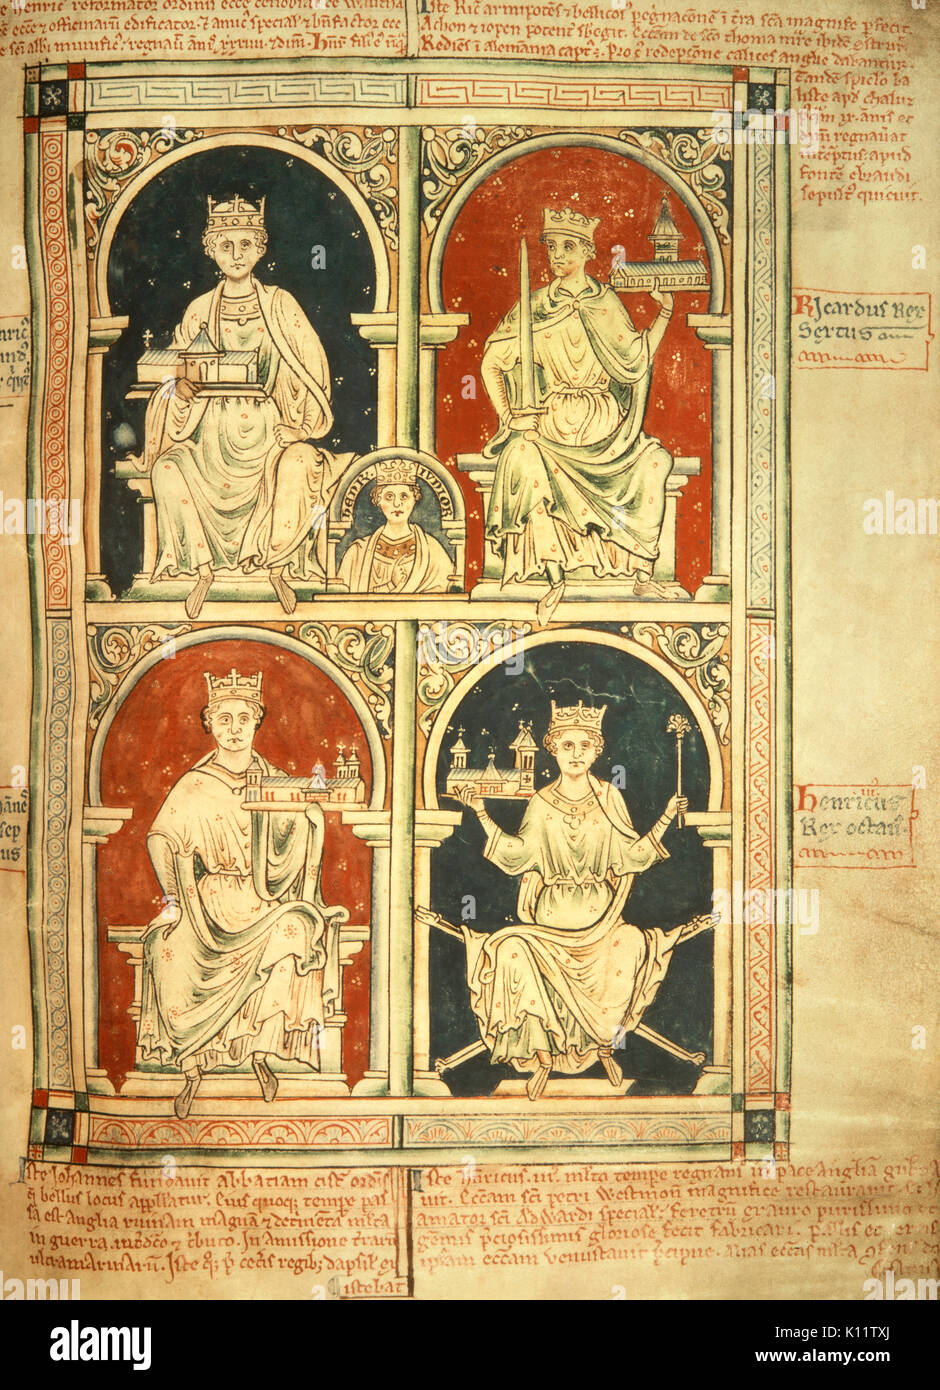 Matthäus Paris - Heinrich II., Richard Löwenherz, John von England, Heinrich III - Von der Historia Anglorum, Chronica majora Stockfoto